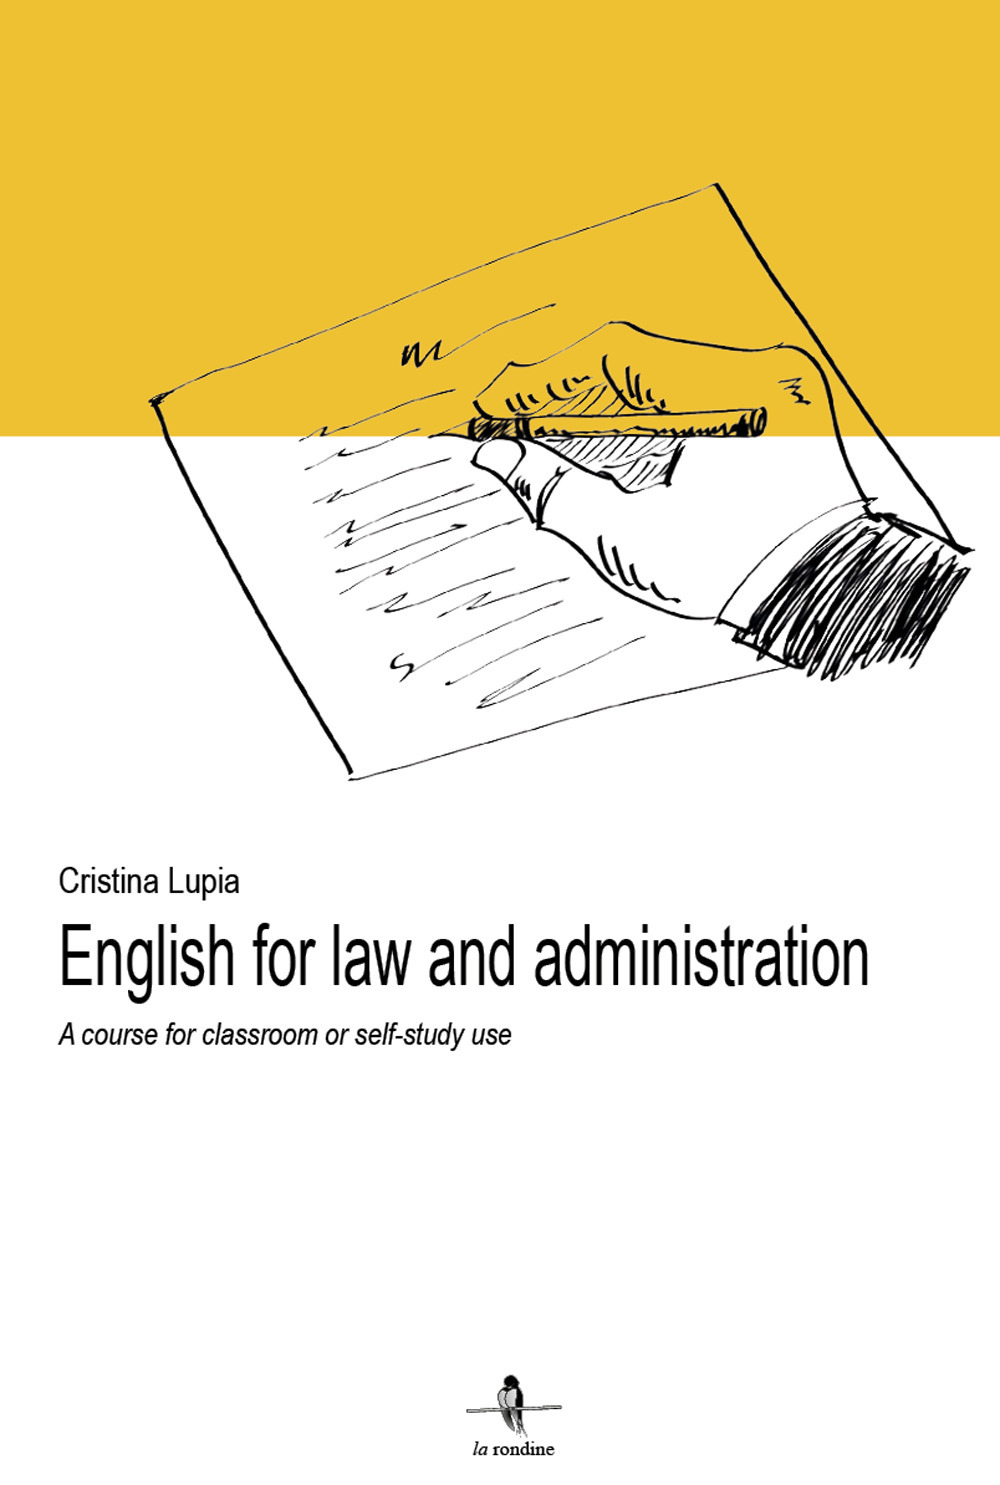 Libri Cristina Lupia - English For Law And Administration. A Course For Classroom Or Self-Study Use NUOVO SIGILLATO, EDIZIONE DEL 29/08/2017 SUBITO DISPONIBILE